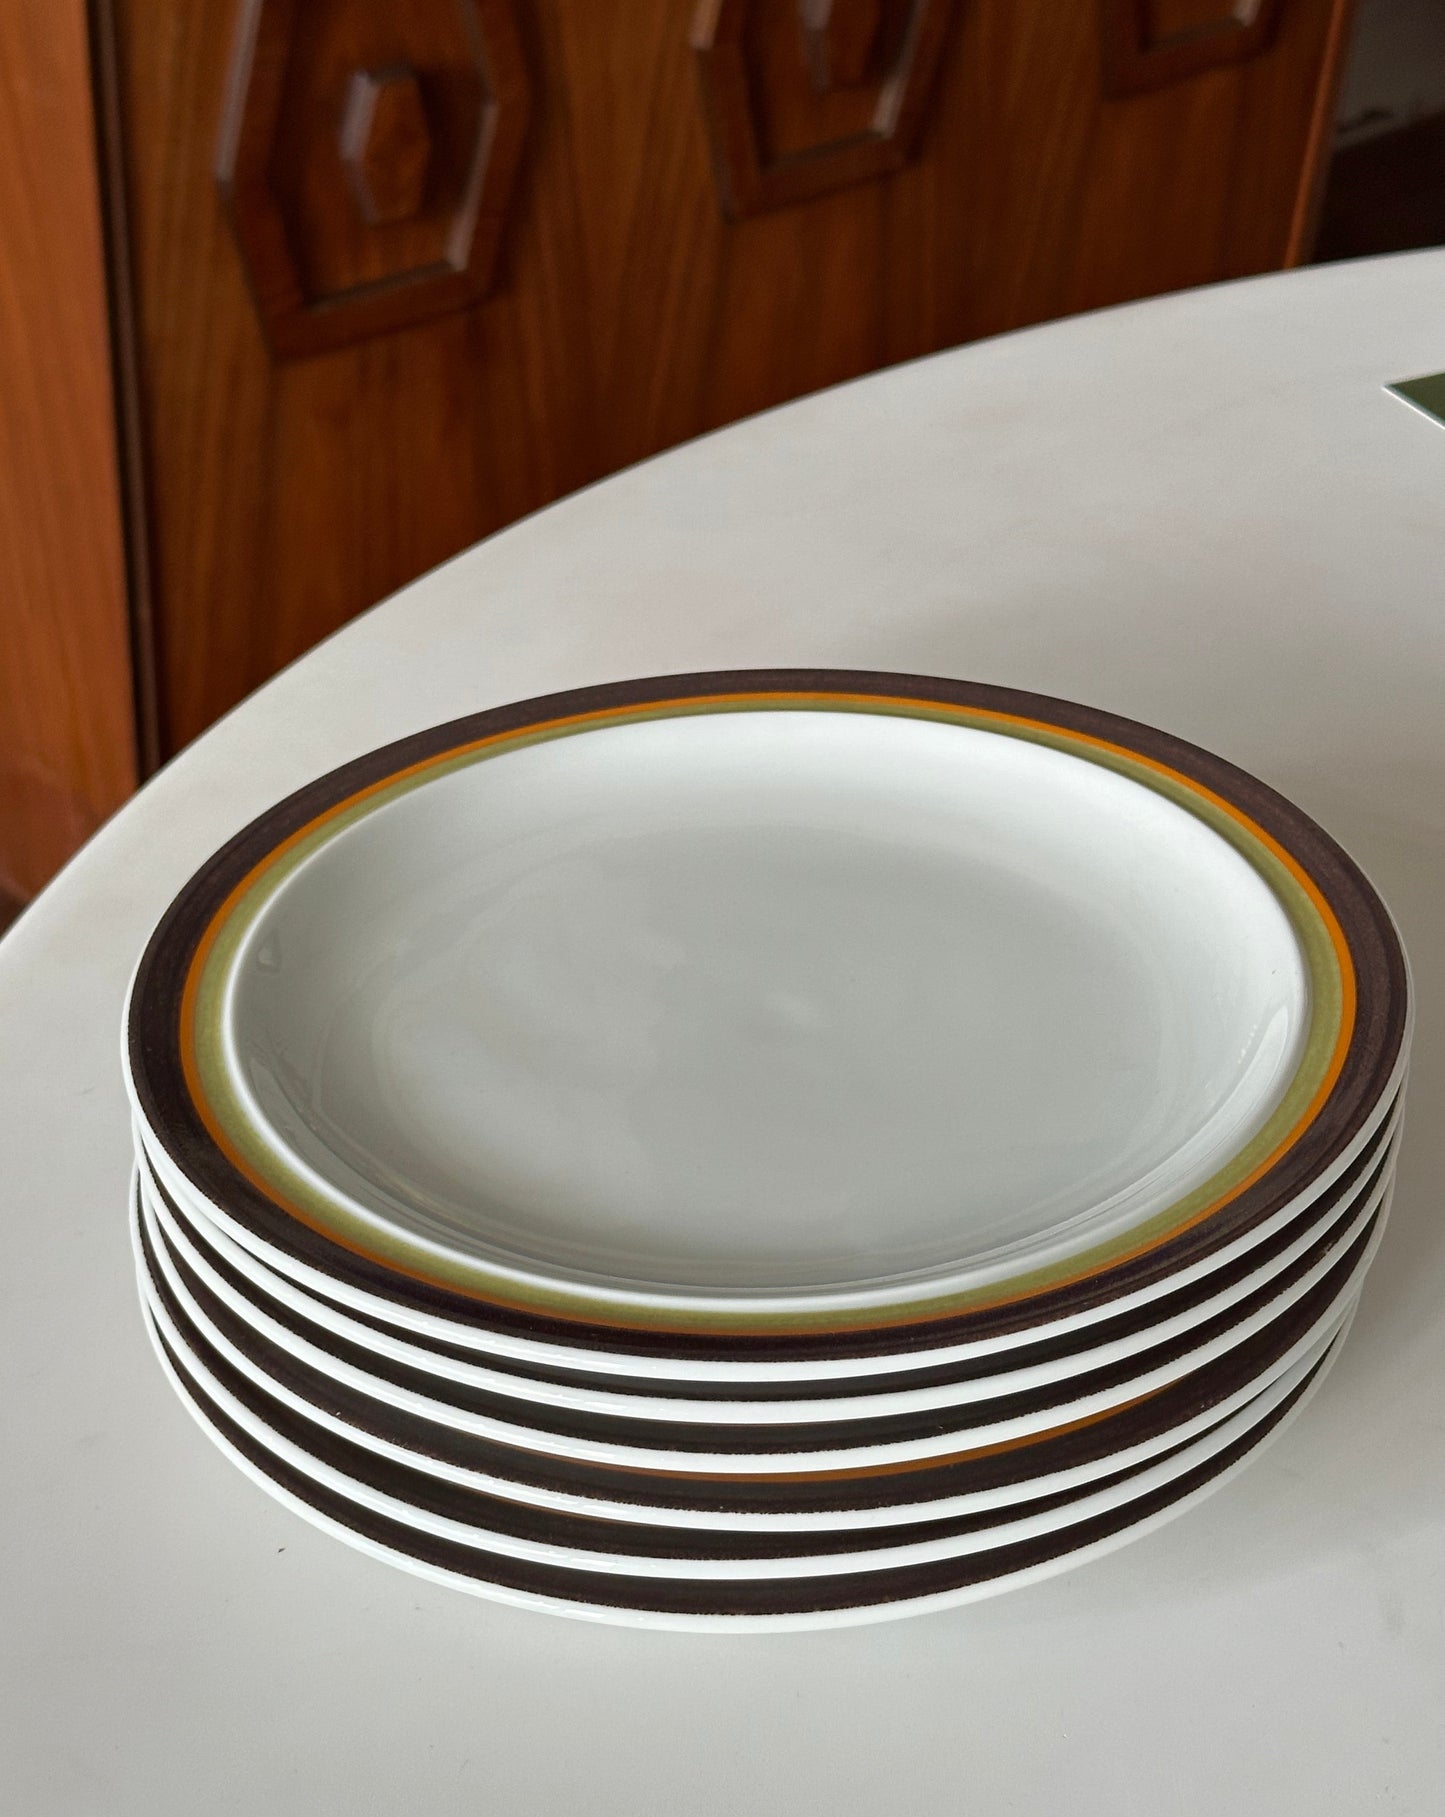 Vintage Thomas Dinner Plates (set of 6)